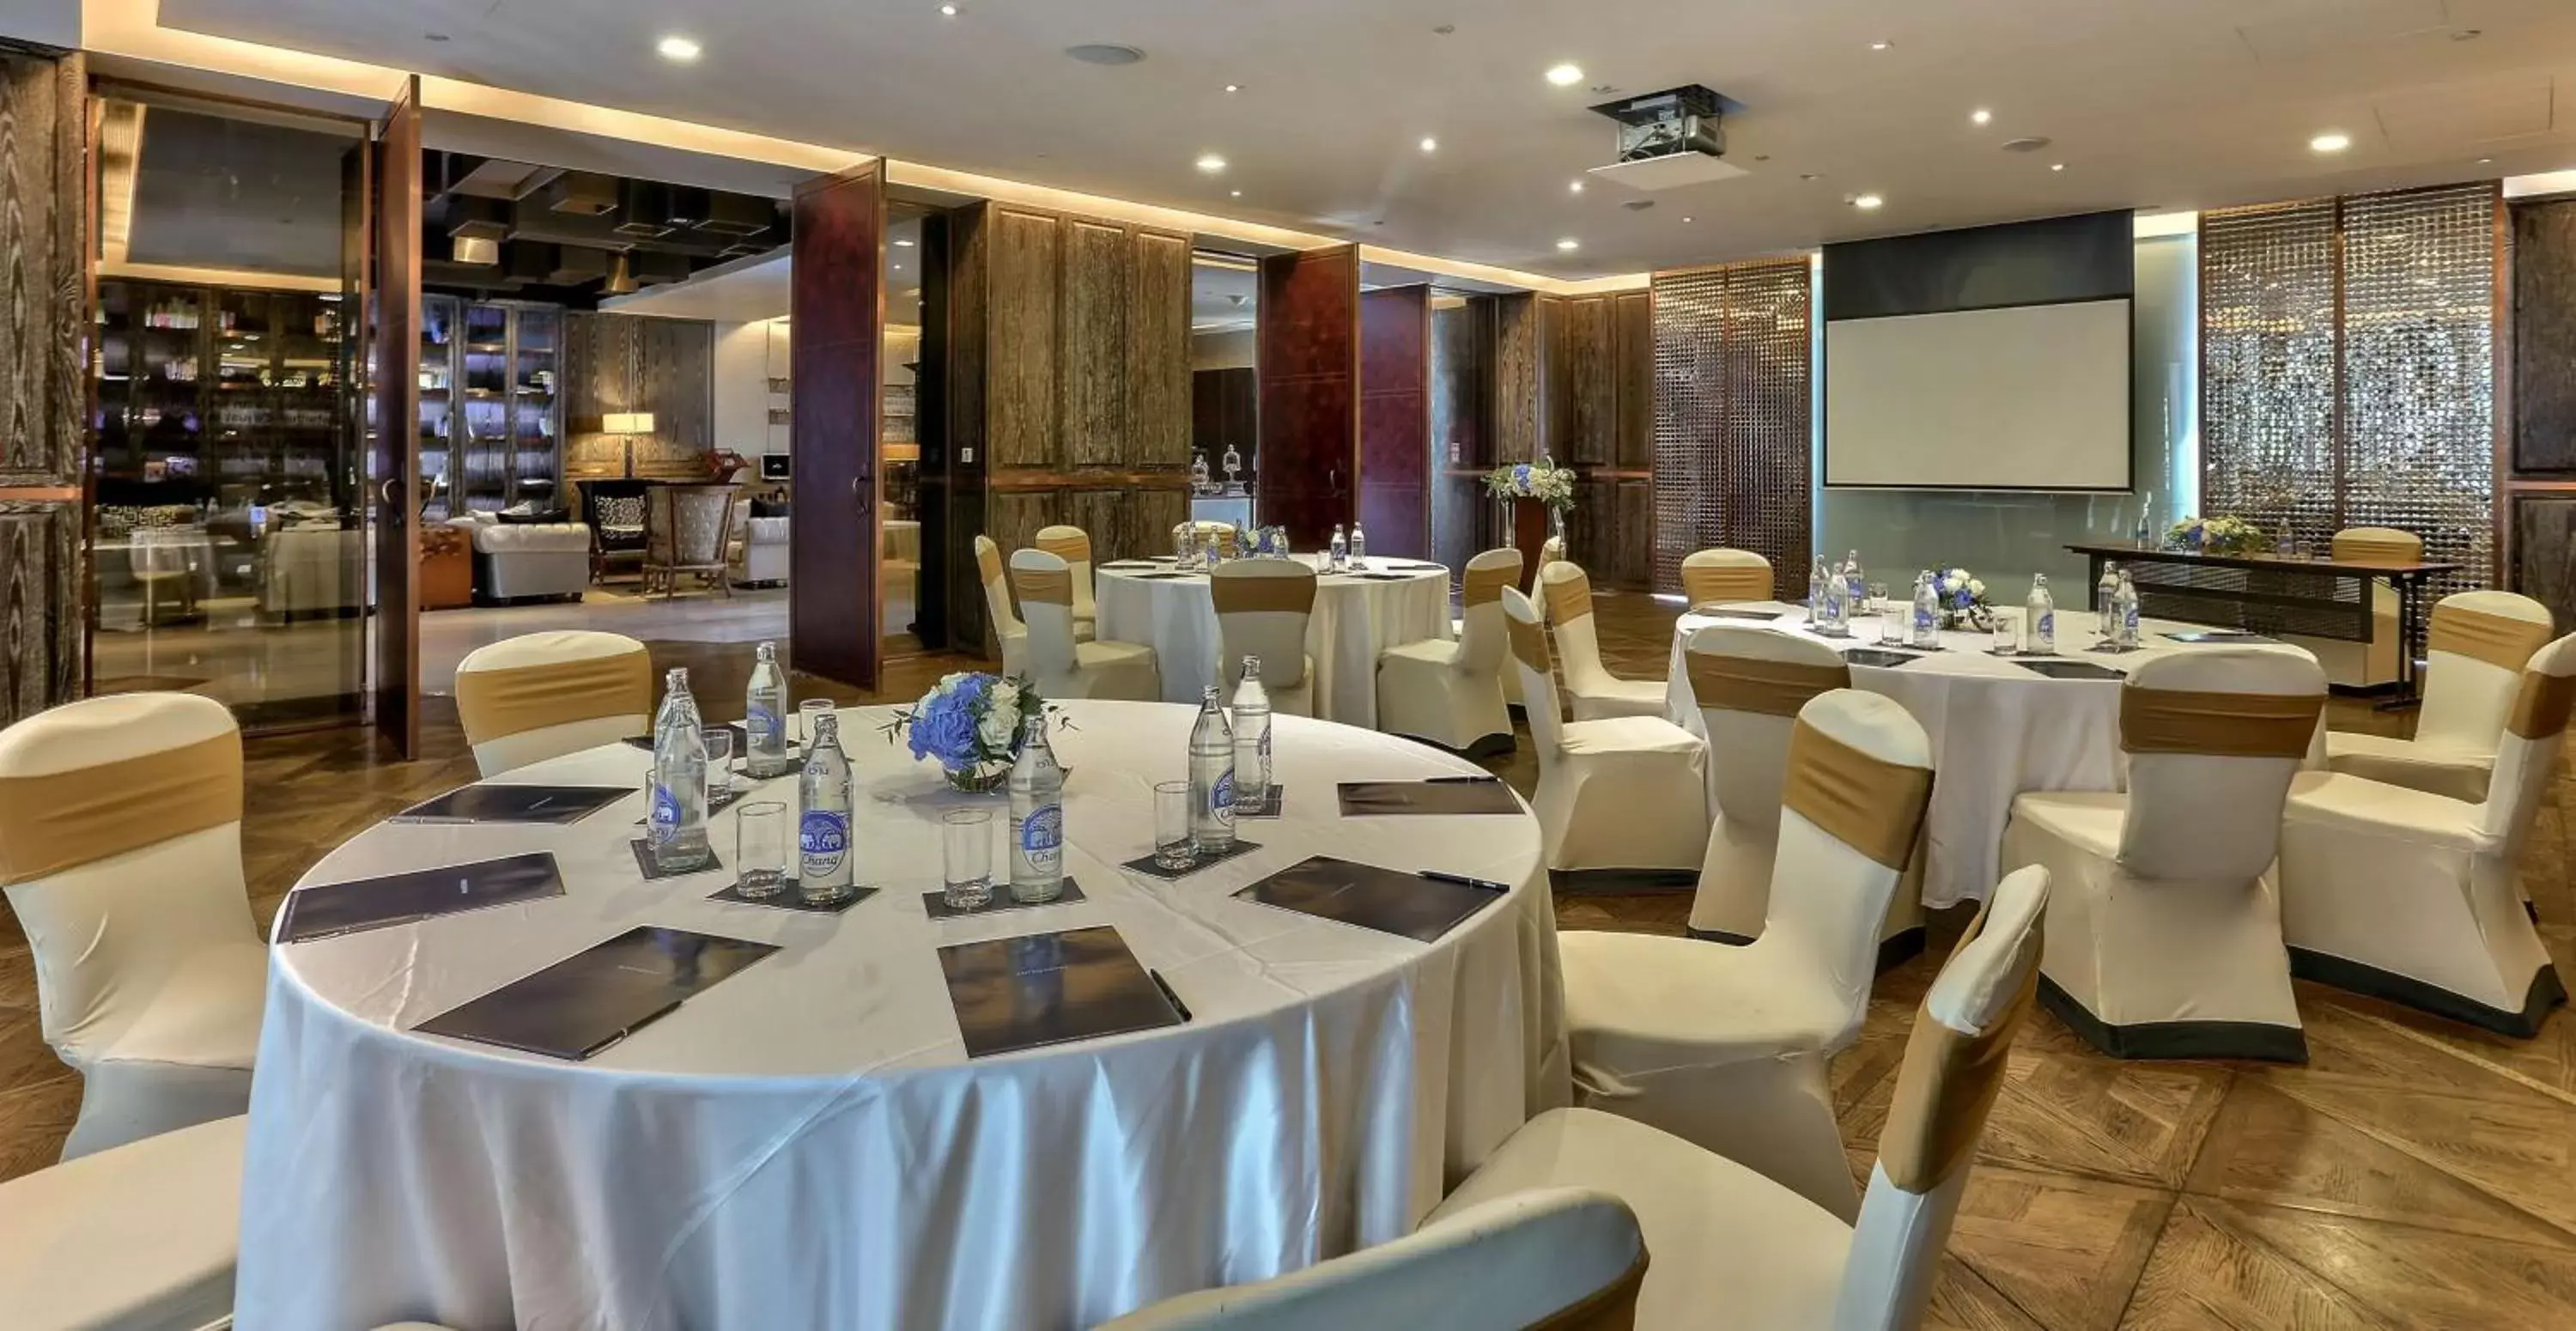 Meeting/conference room, Banquet Facilities in Hilton Sukhumvit Bangkok